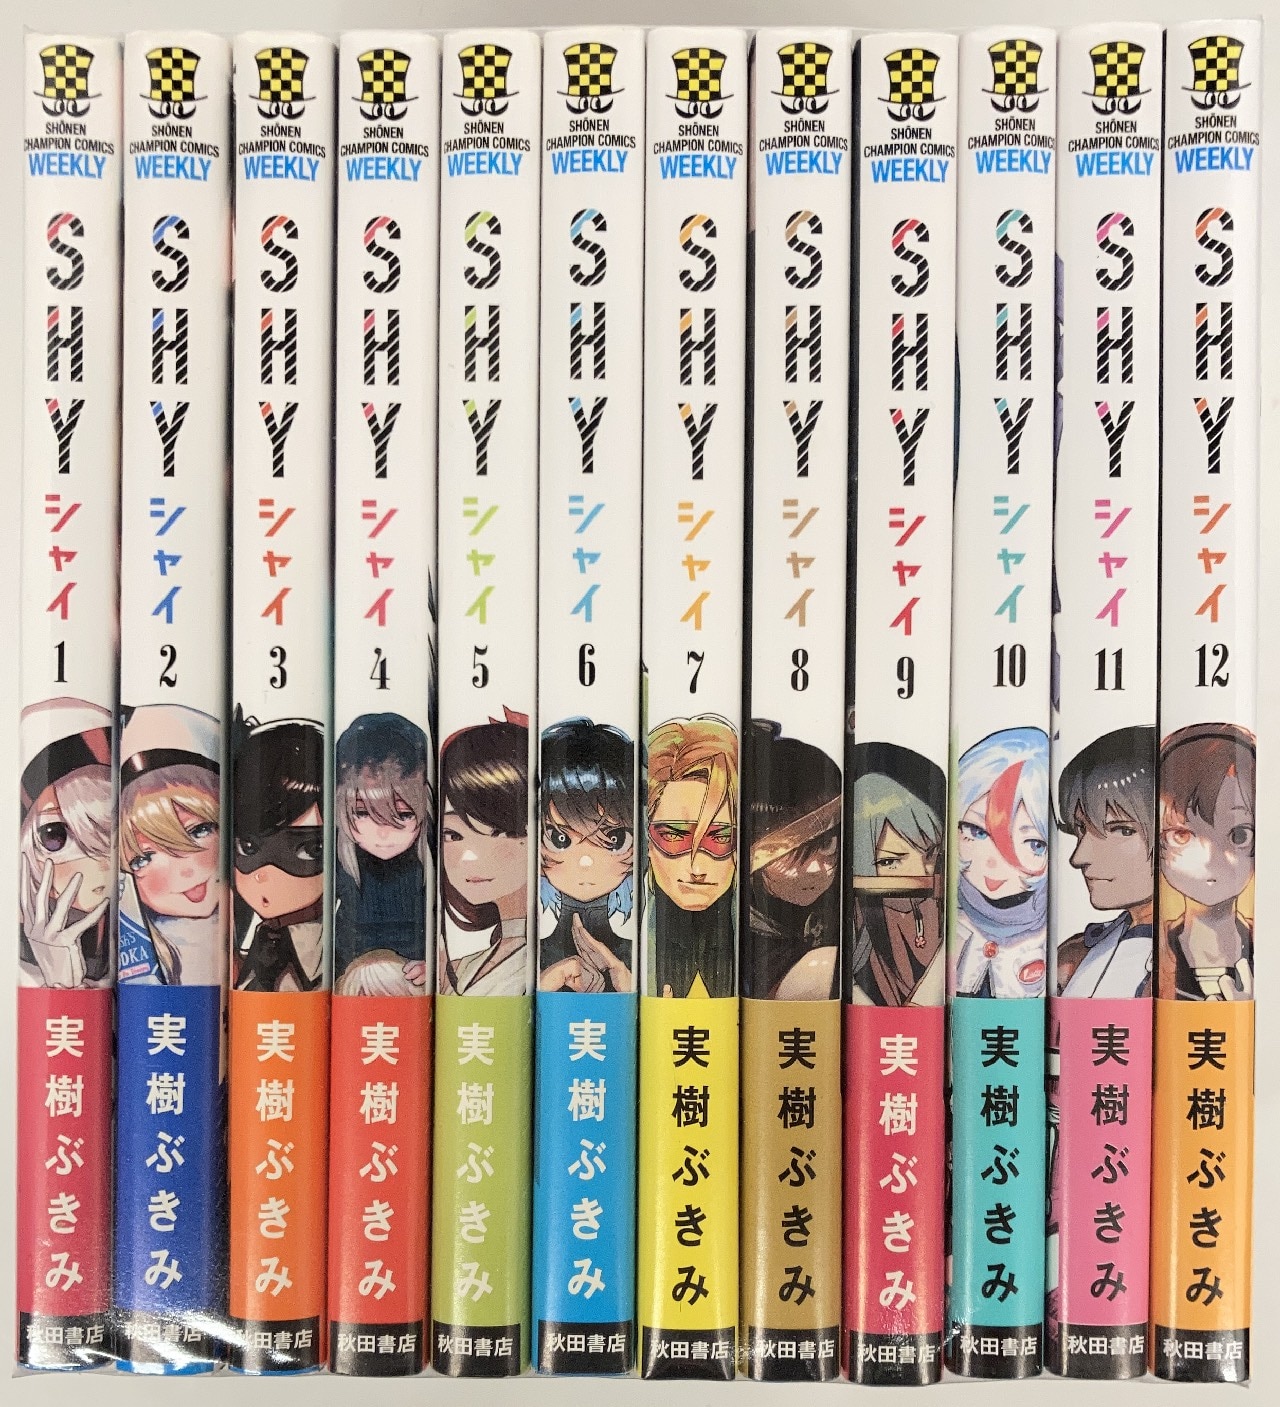 秋田書店 少年チャンピオンコミックス 実樹ぶきみ Shy 最新1 12巻 最新セット まんだらけ Mandarake